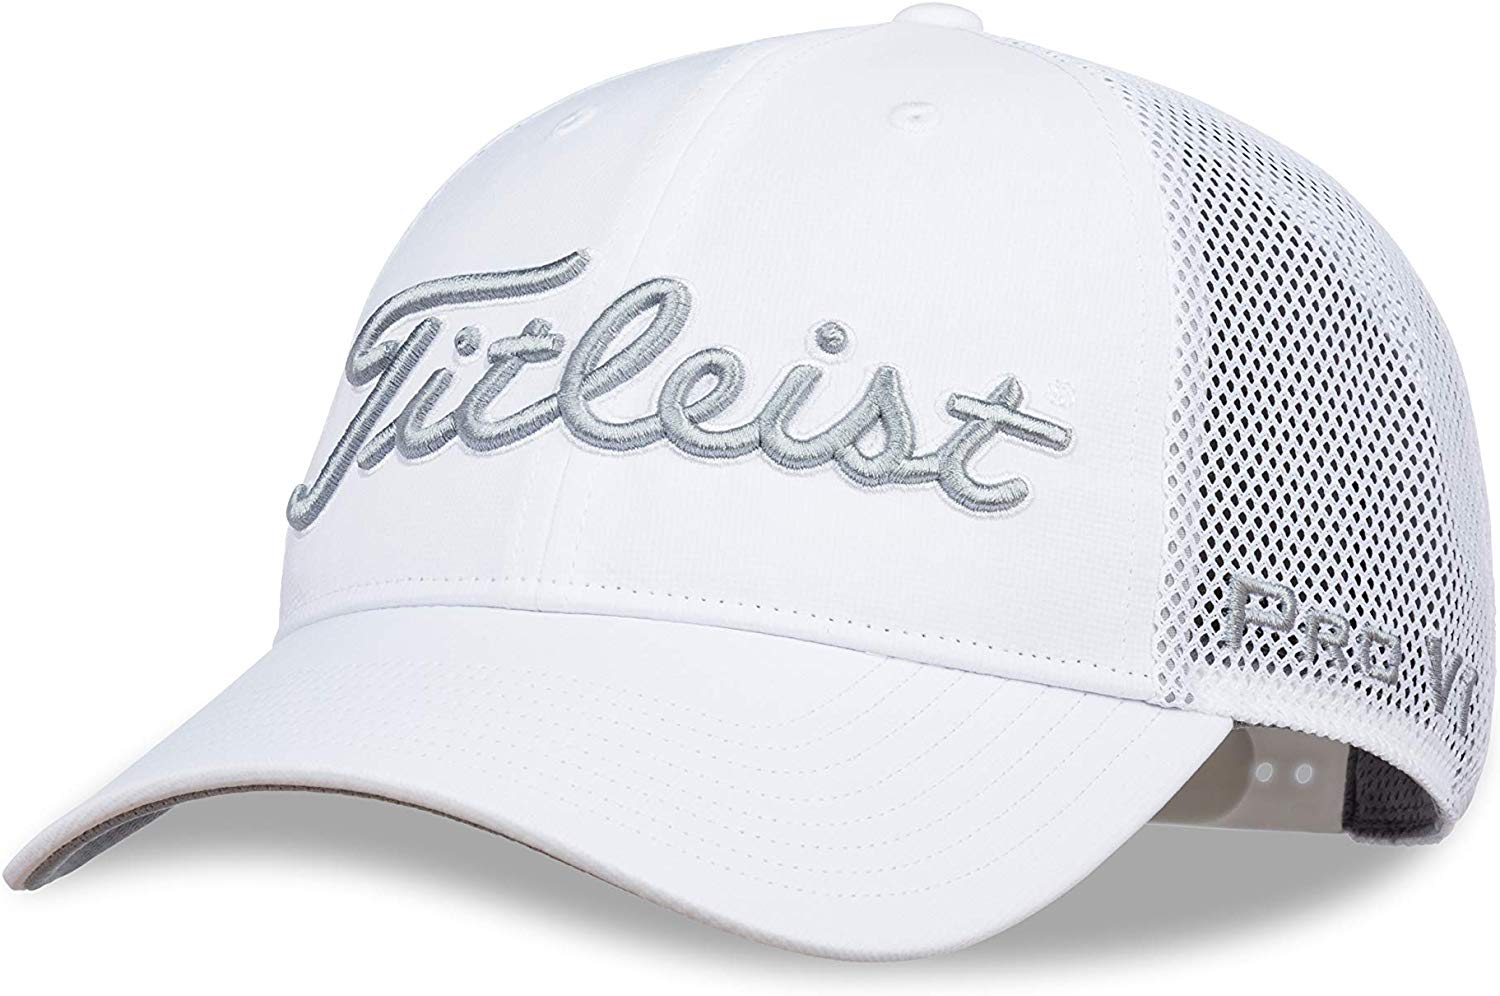 Titleist Mens Tour Performance Mesh Golf Hats